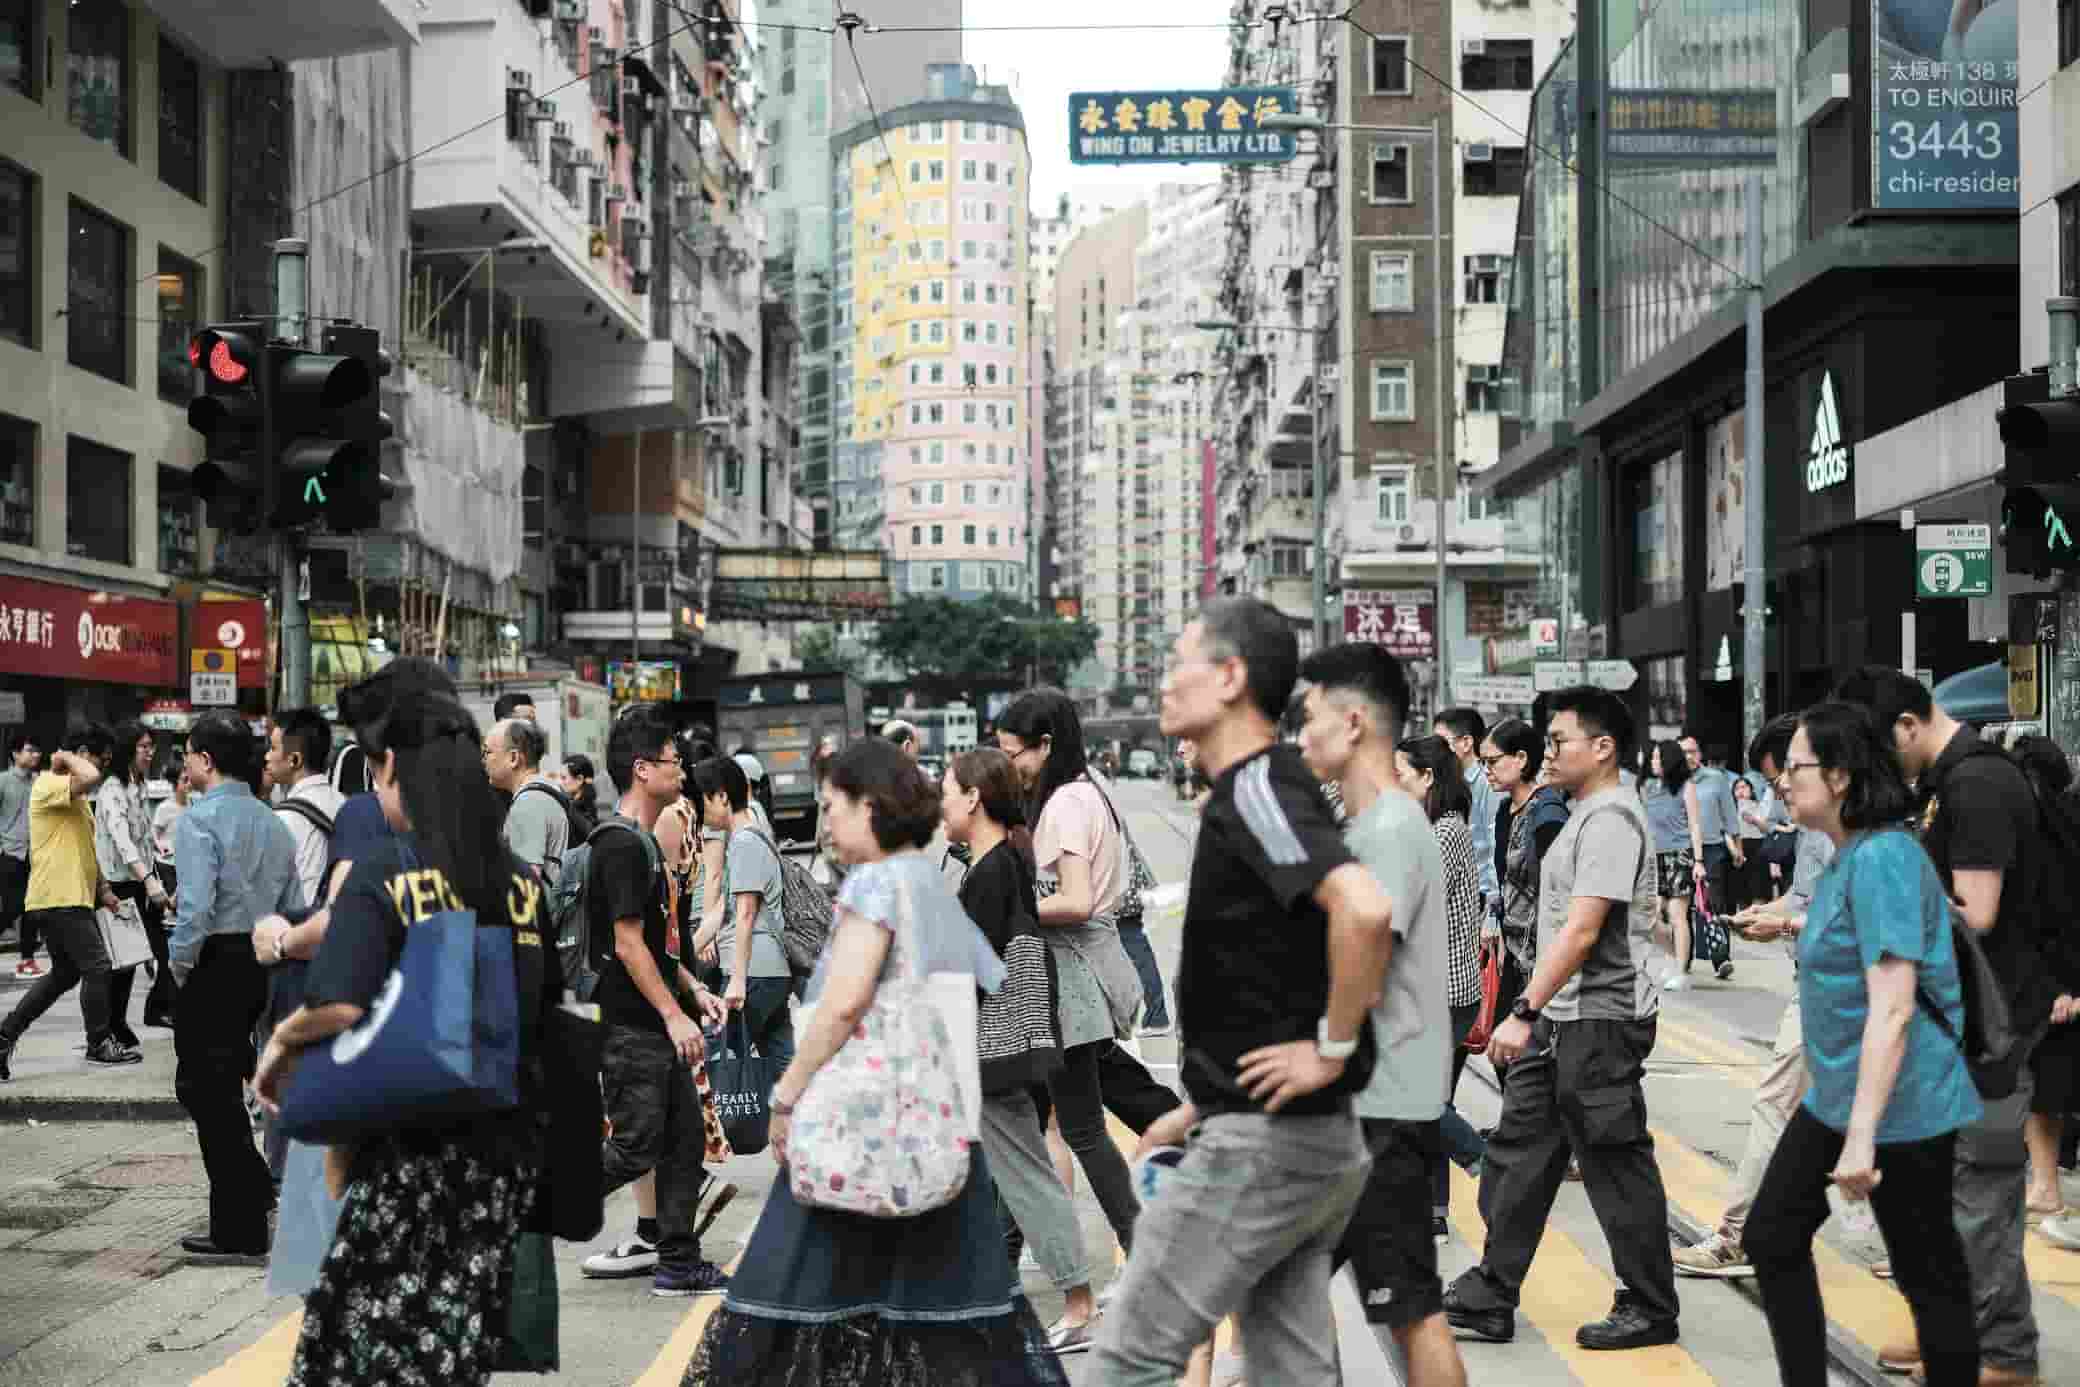 Crowd at a crosswalk in Hong Kong